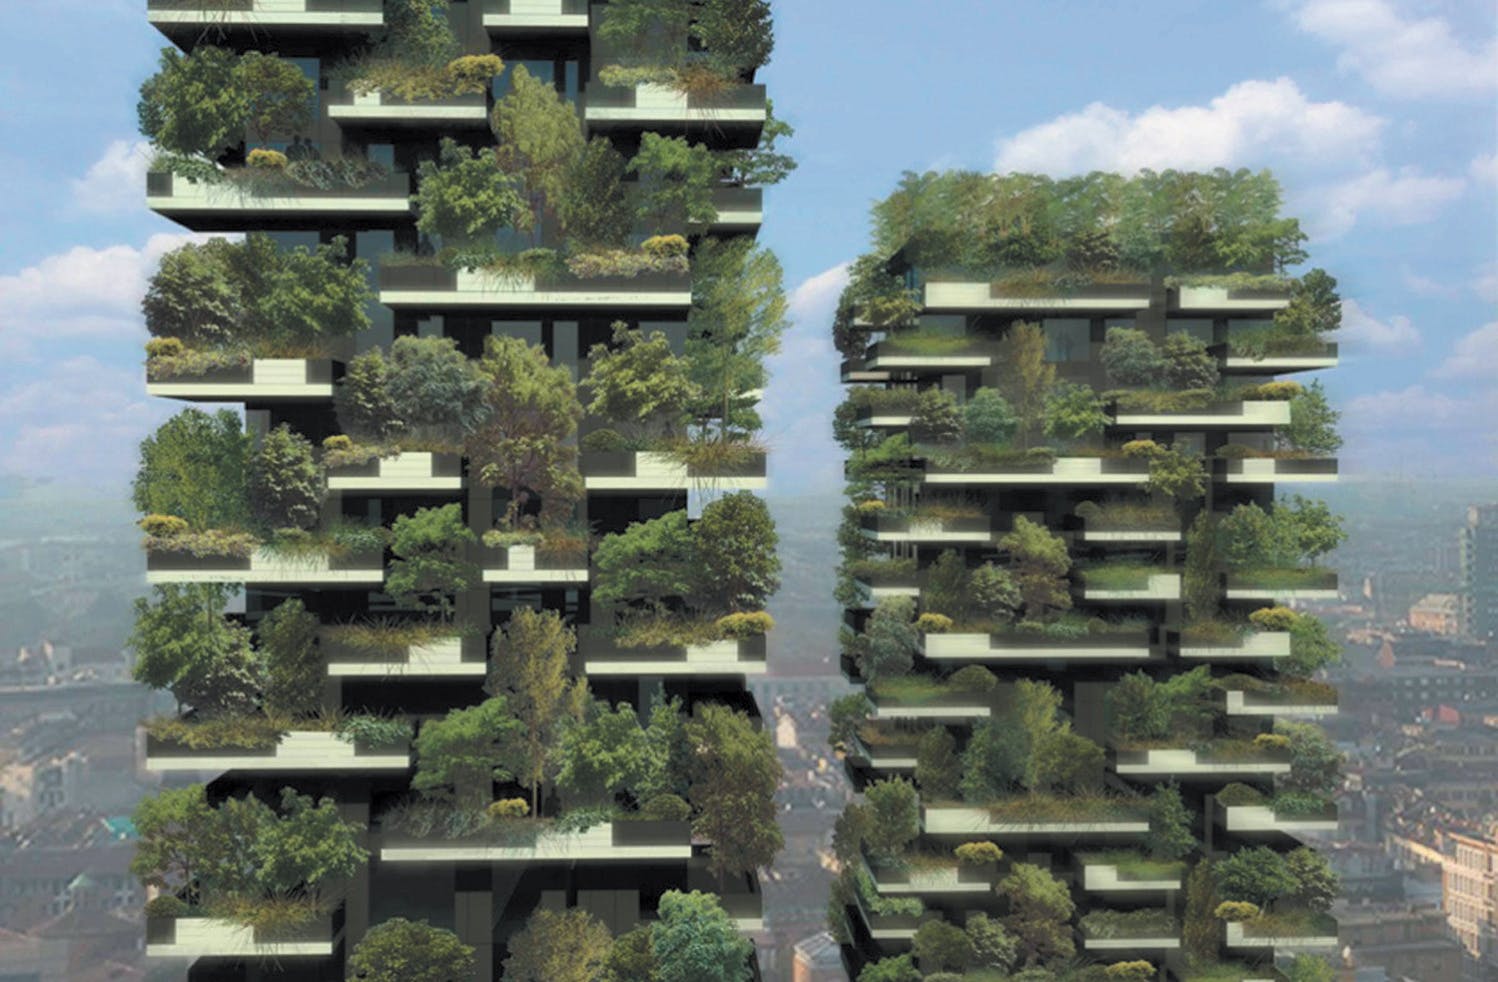 Une forêt verticale à Milan